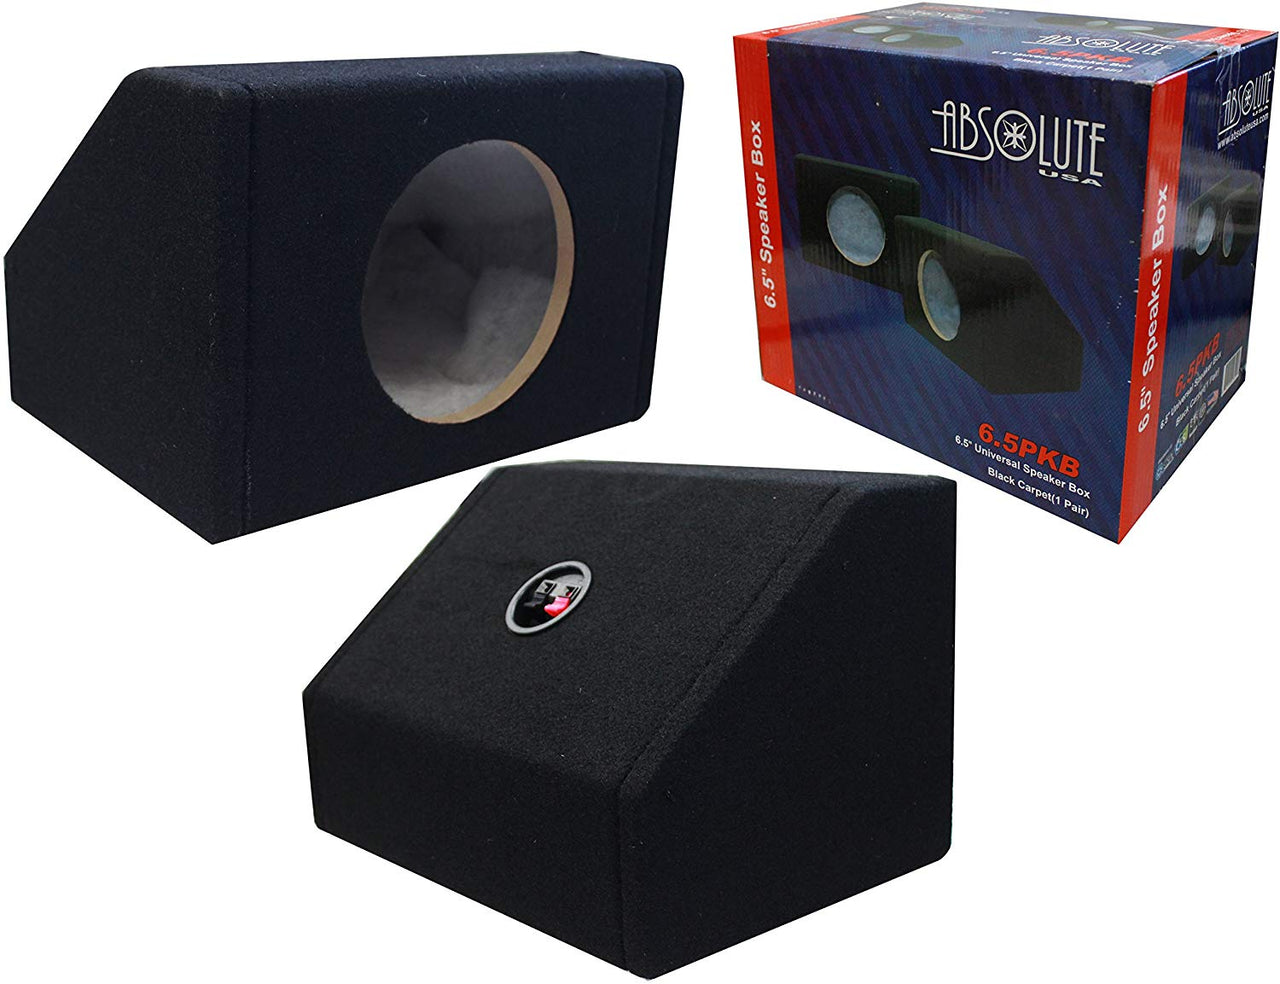 Absolute 6X9PKB 6 X 9" Angled/Wedge Black Speaker Box